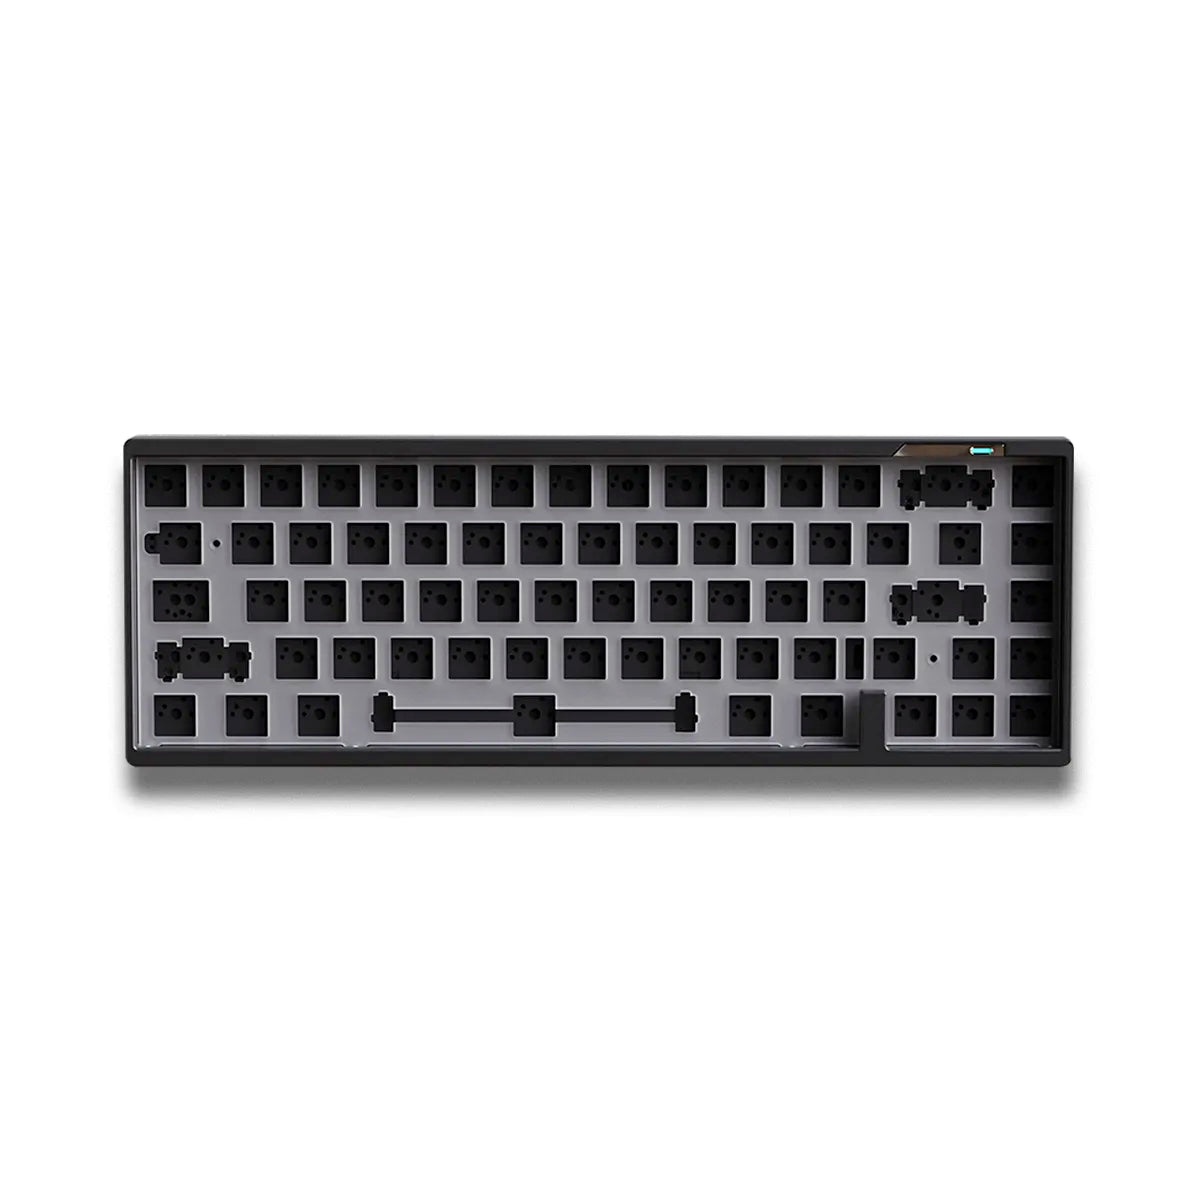 Luminkey65 65% Keyboard